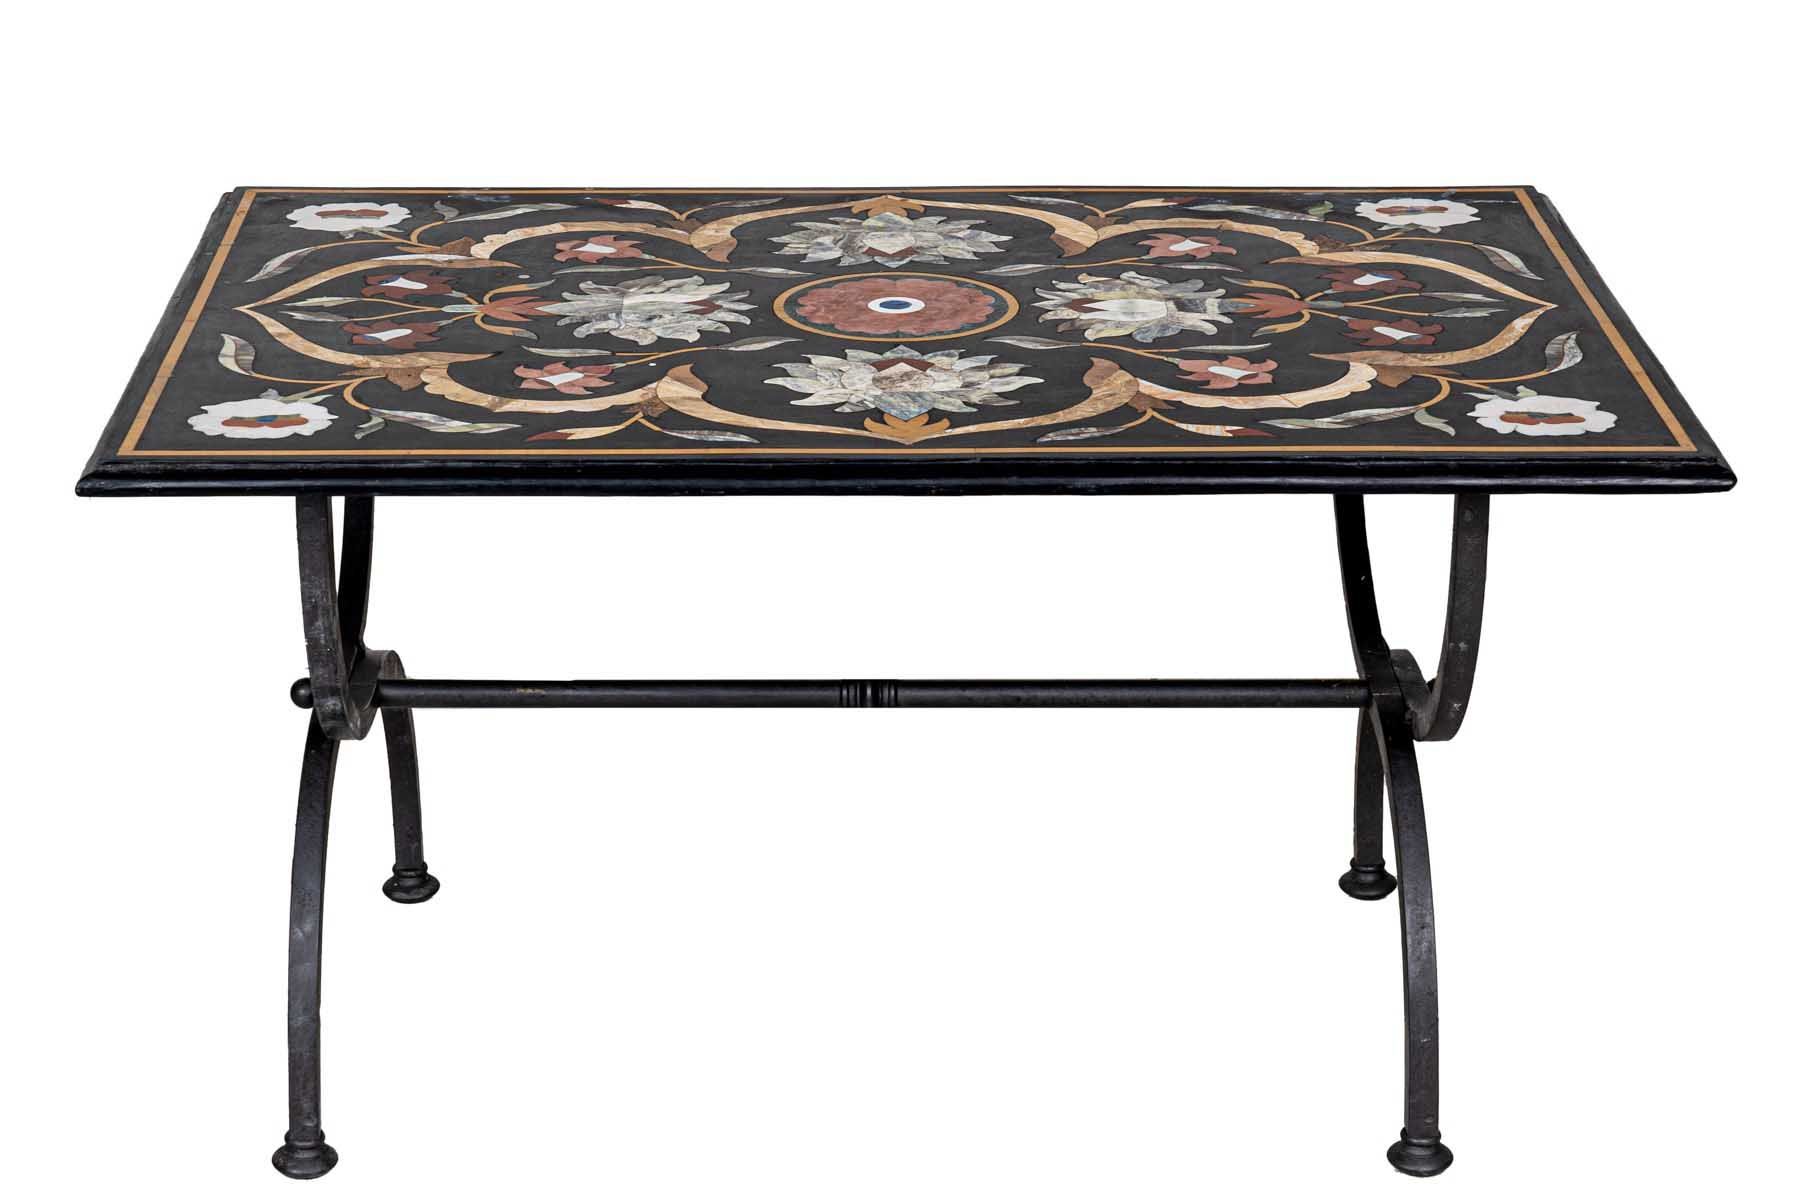 Null 嵌有大理石桌面的小桌子

20世纪初

镶嵌有半宝石的黑色大理石桌面和锻铁底座

88.5x59x47厘米